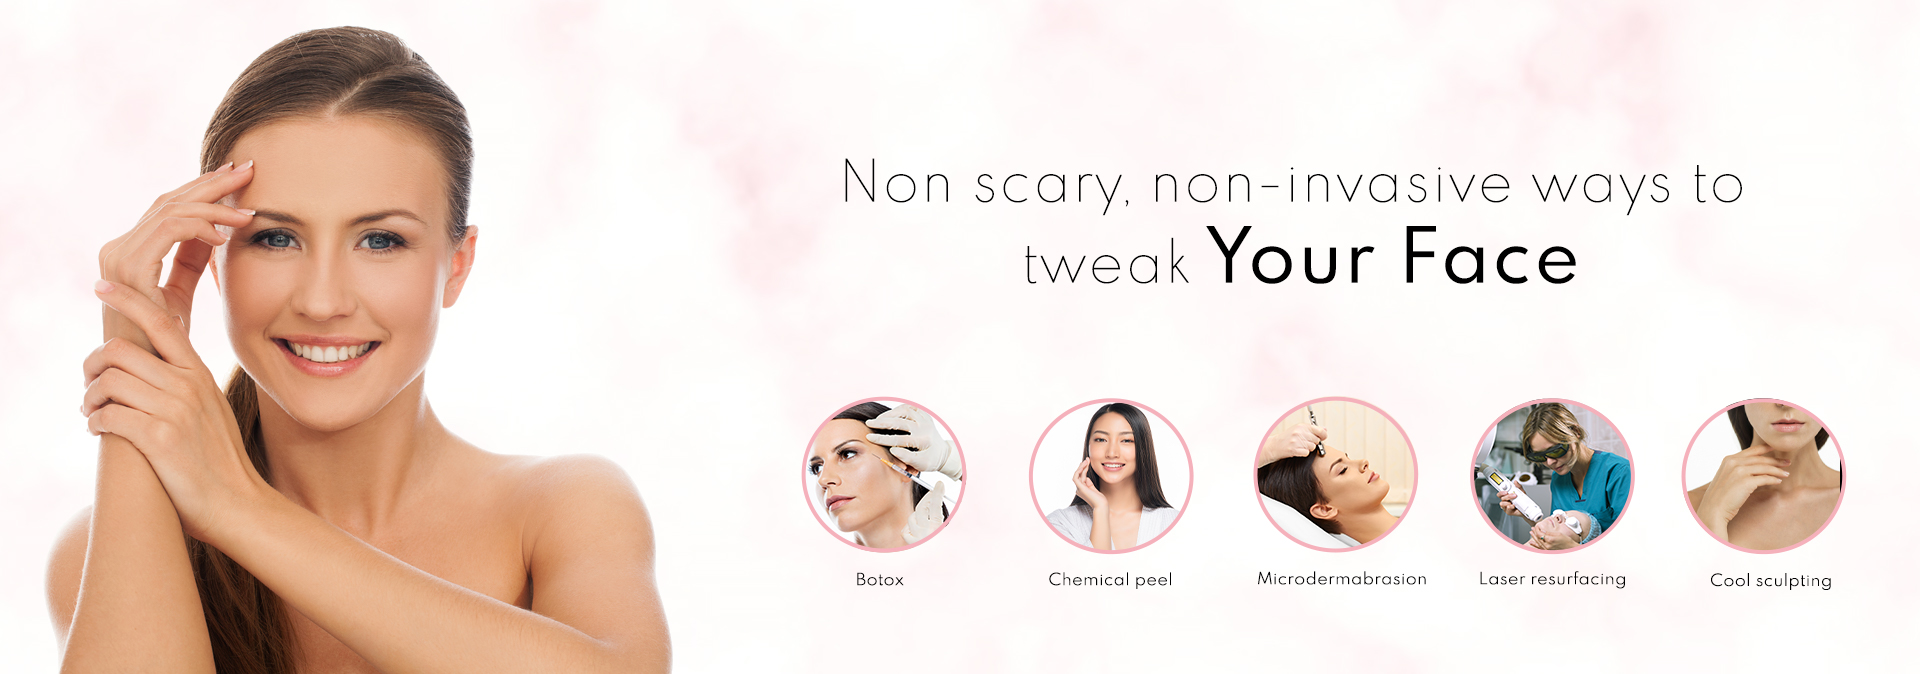  Non-scary, non-invasive ways to tweak your face